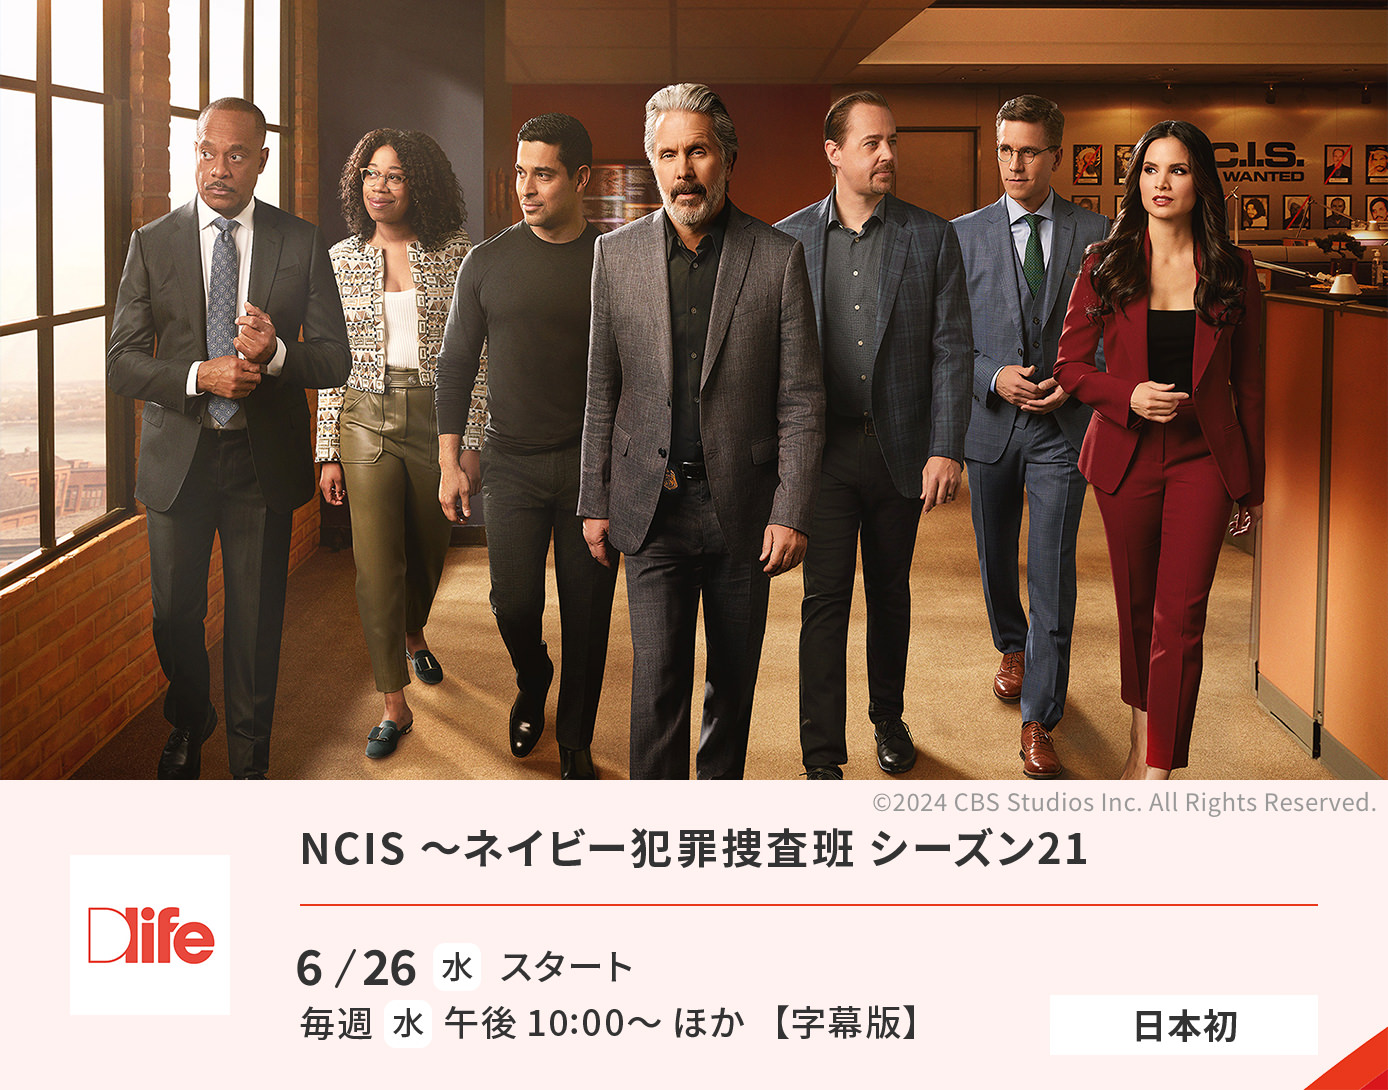 NCIS〜ネイビー犯罪捜査班 シーズン21